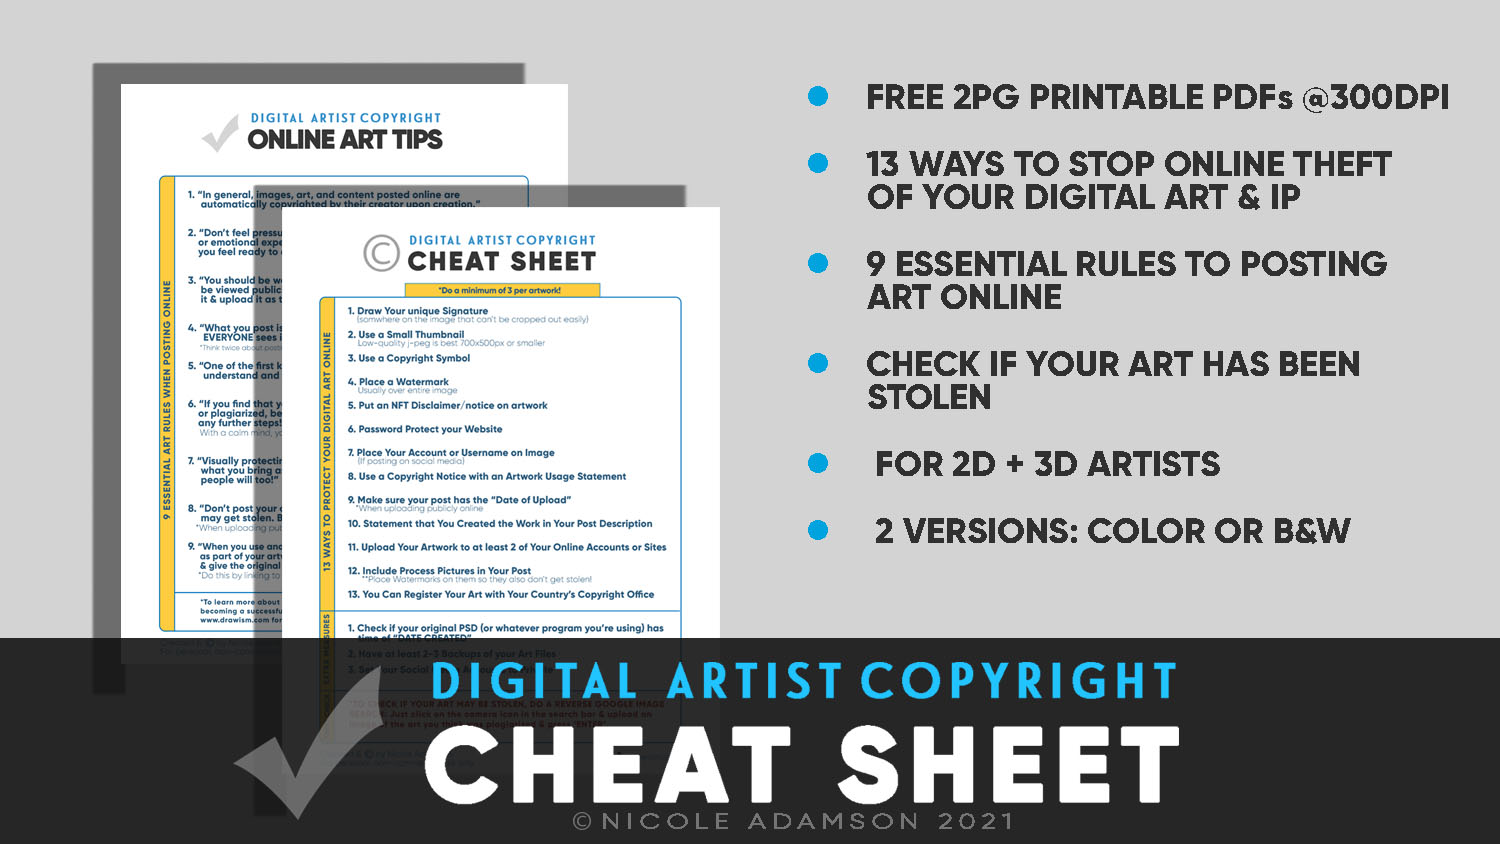 Digital Artist Copyright Cheat Sheet for NFT Art Theft